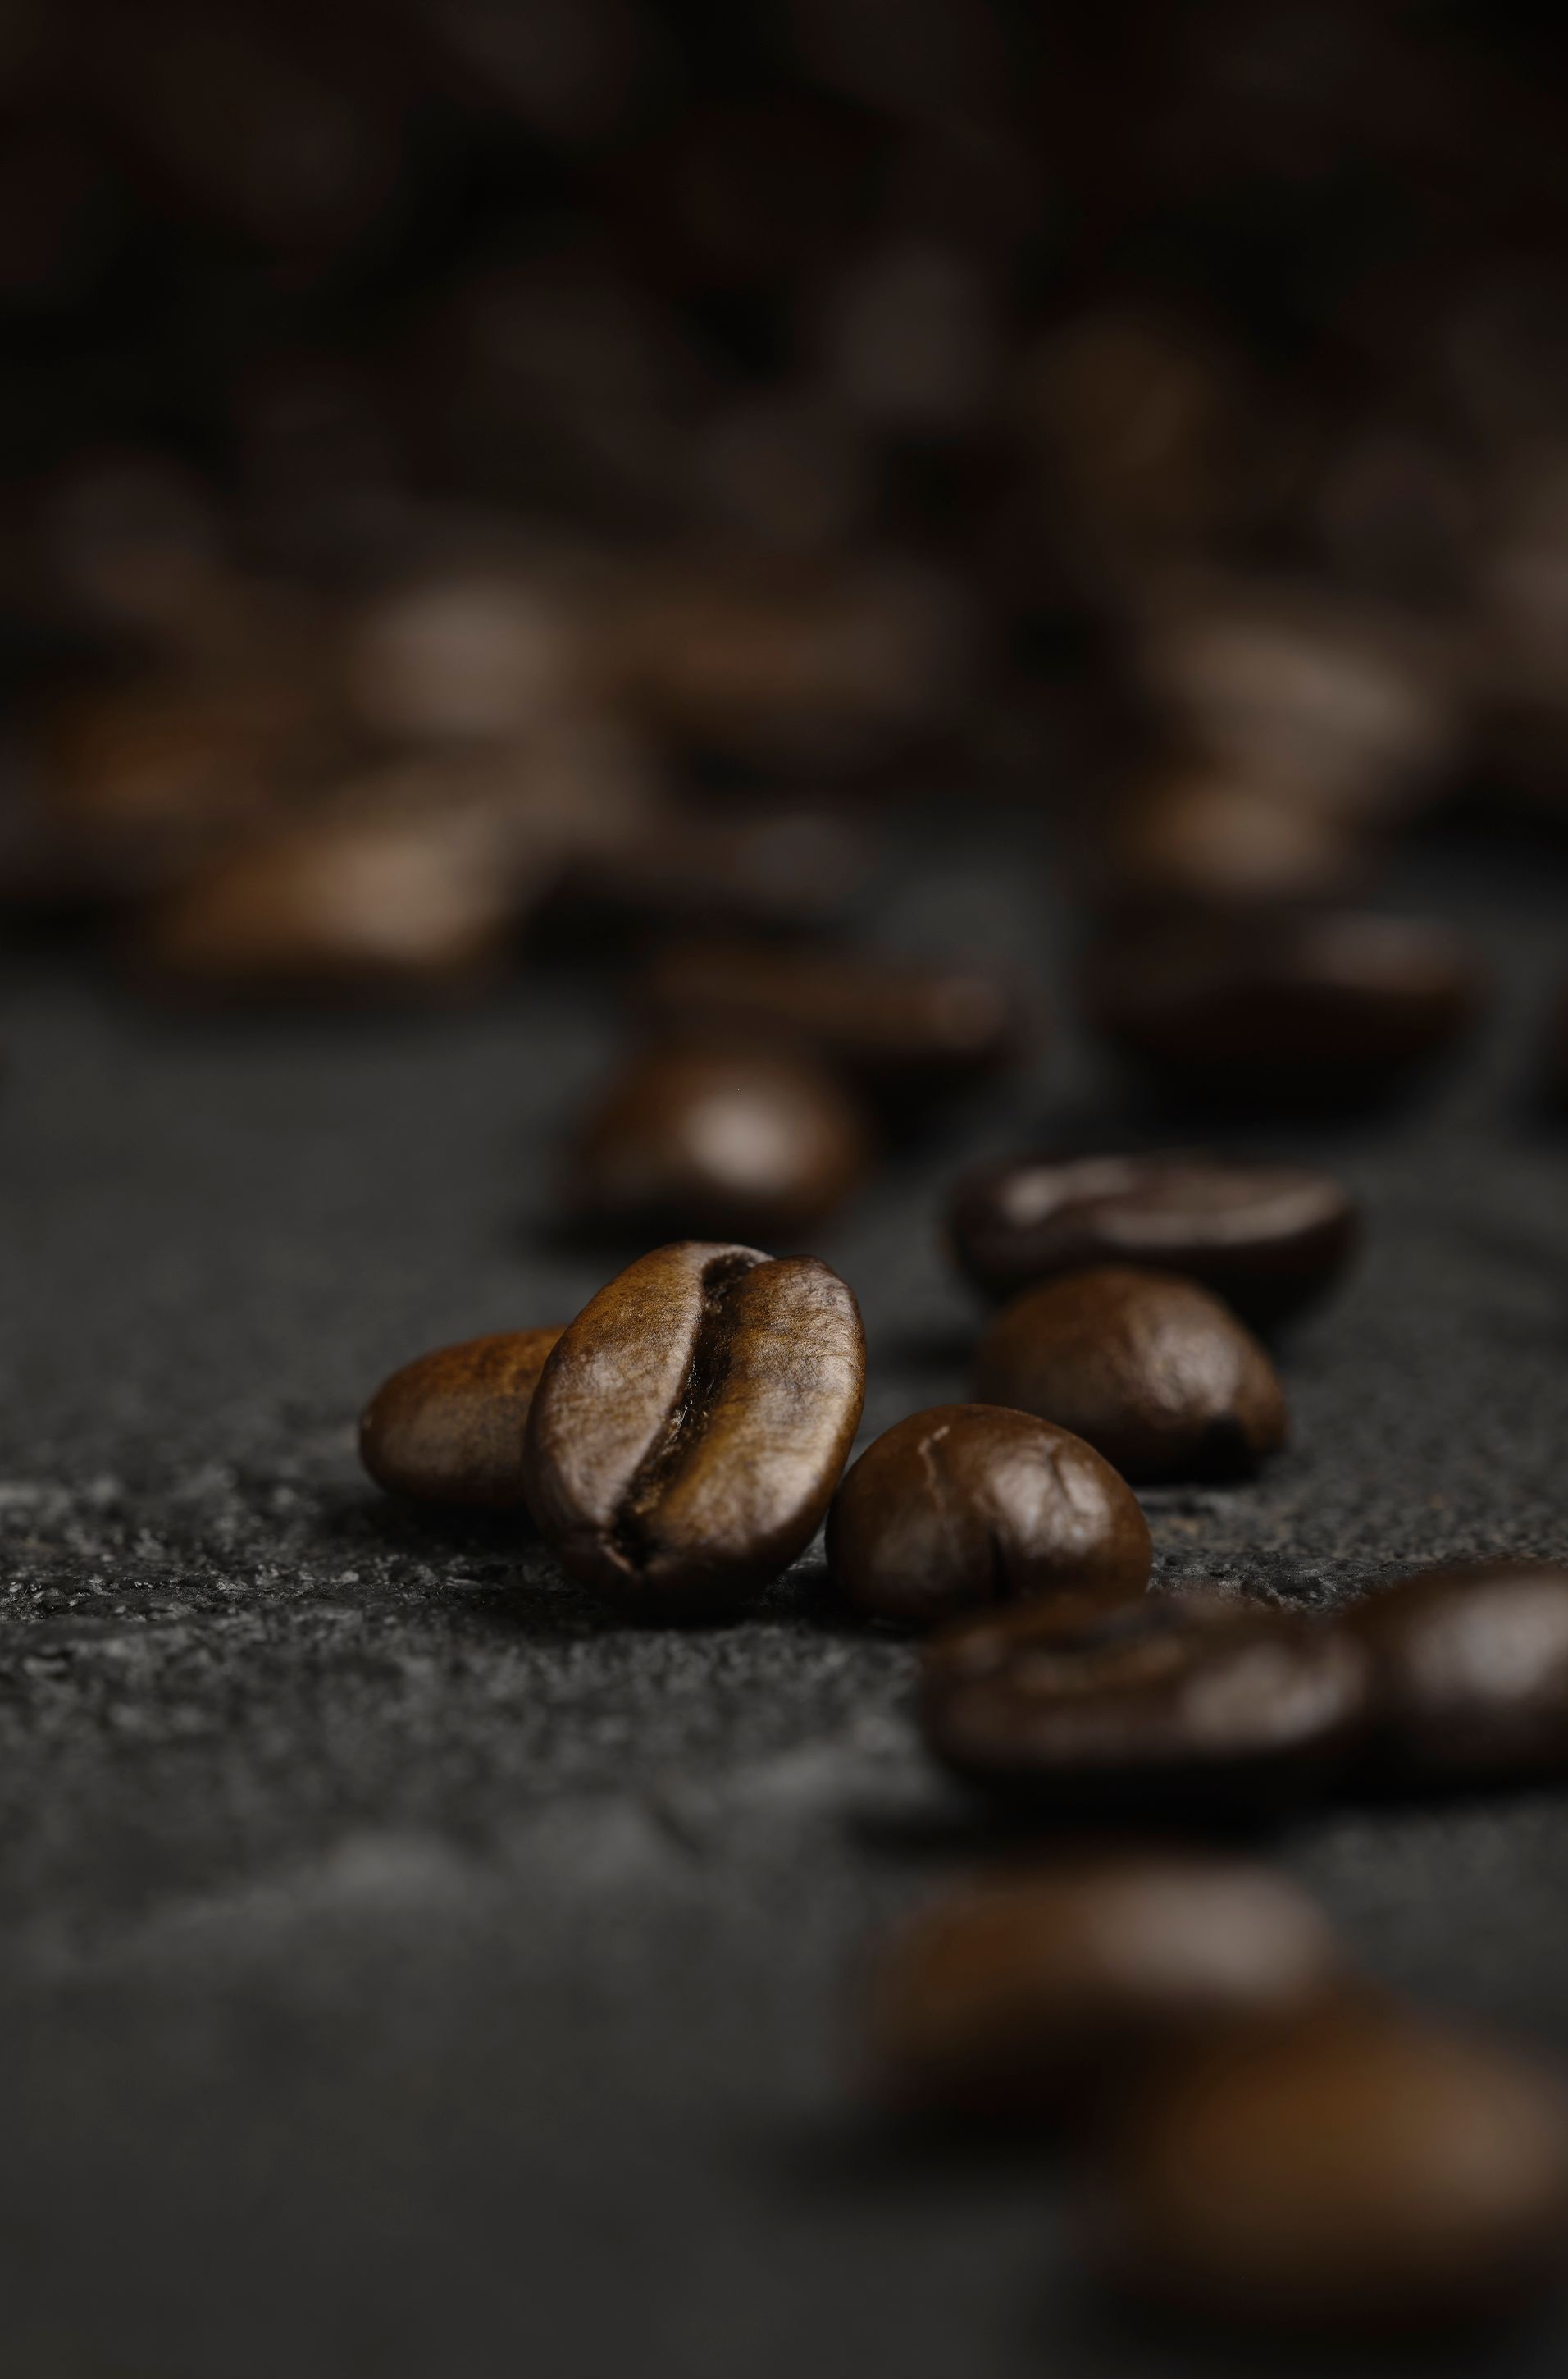 Blurred coffee beans